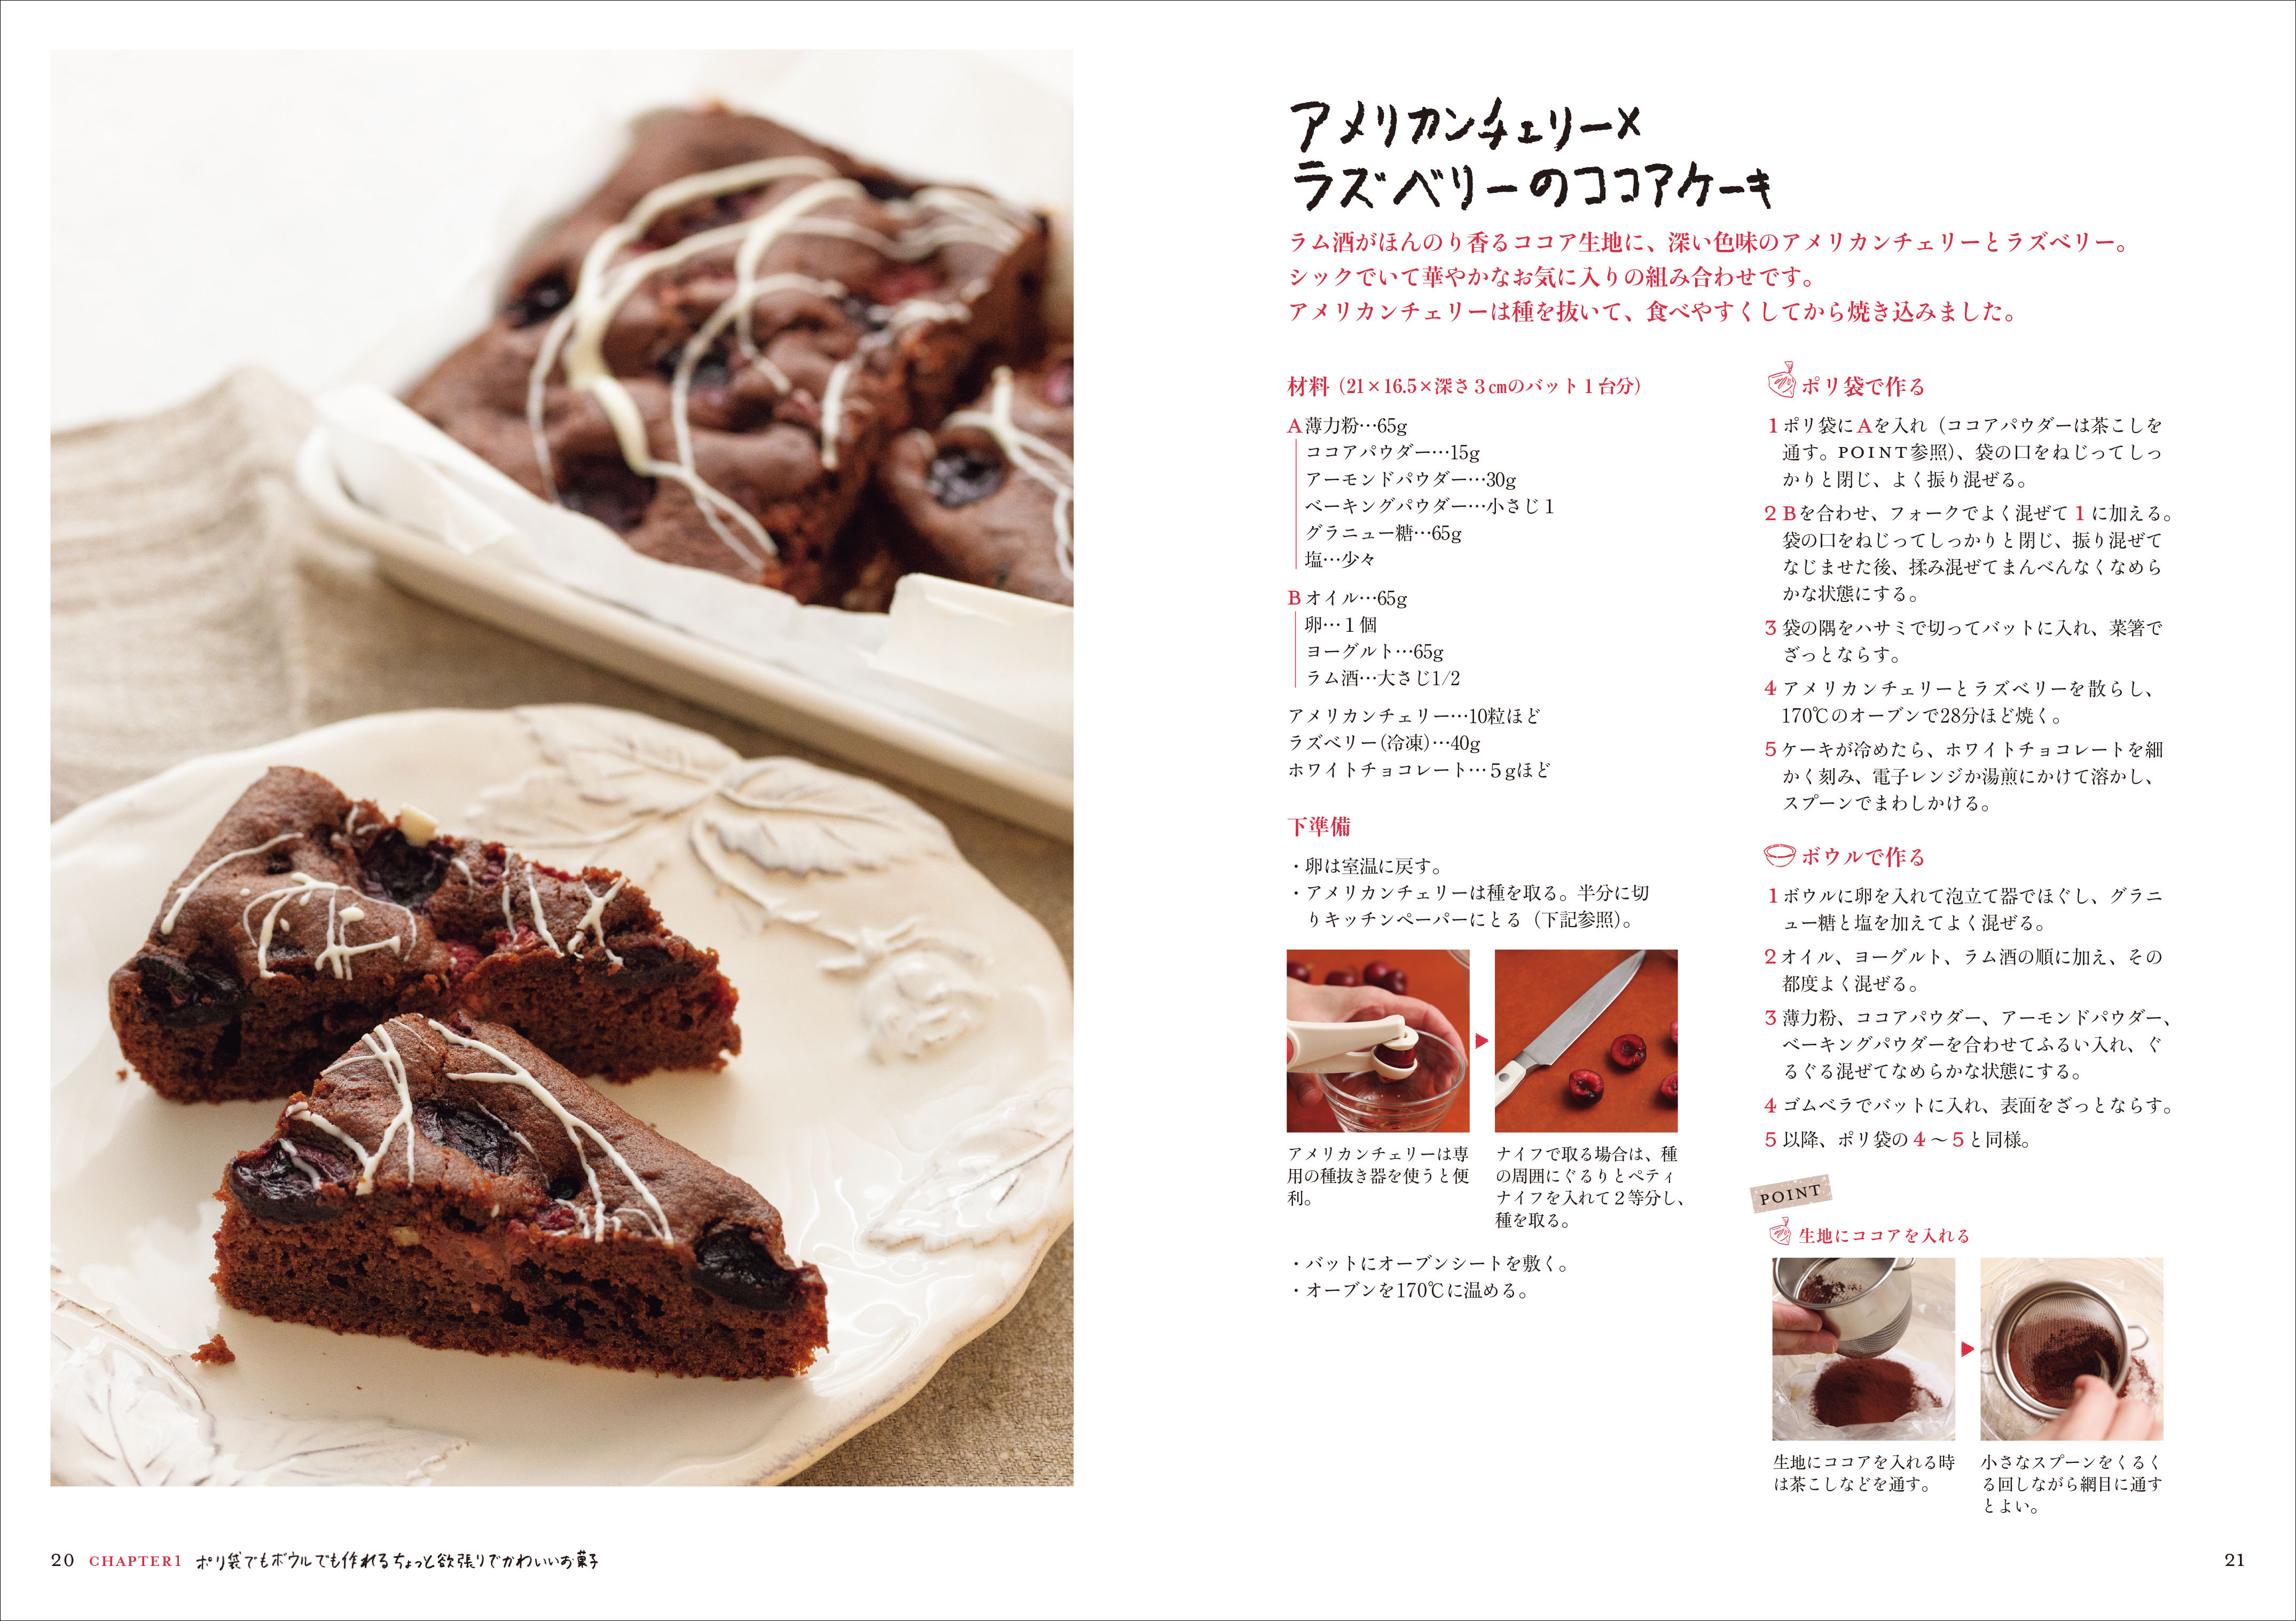 「アメリカンチェリー×ラズベリーのココアケーキ」のレシピページ